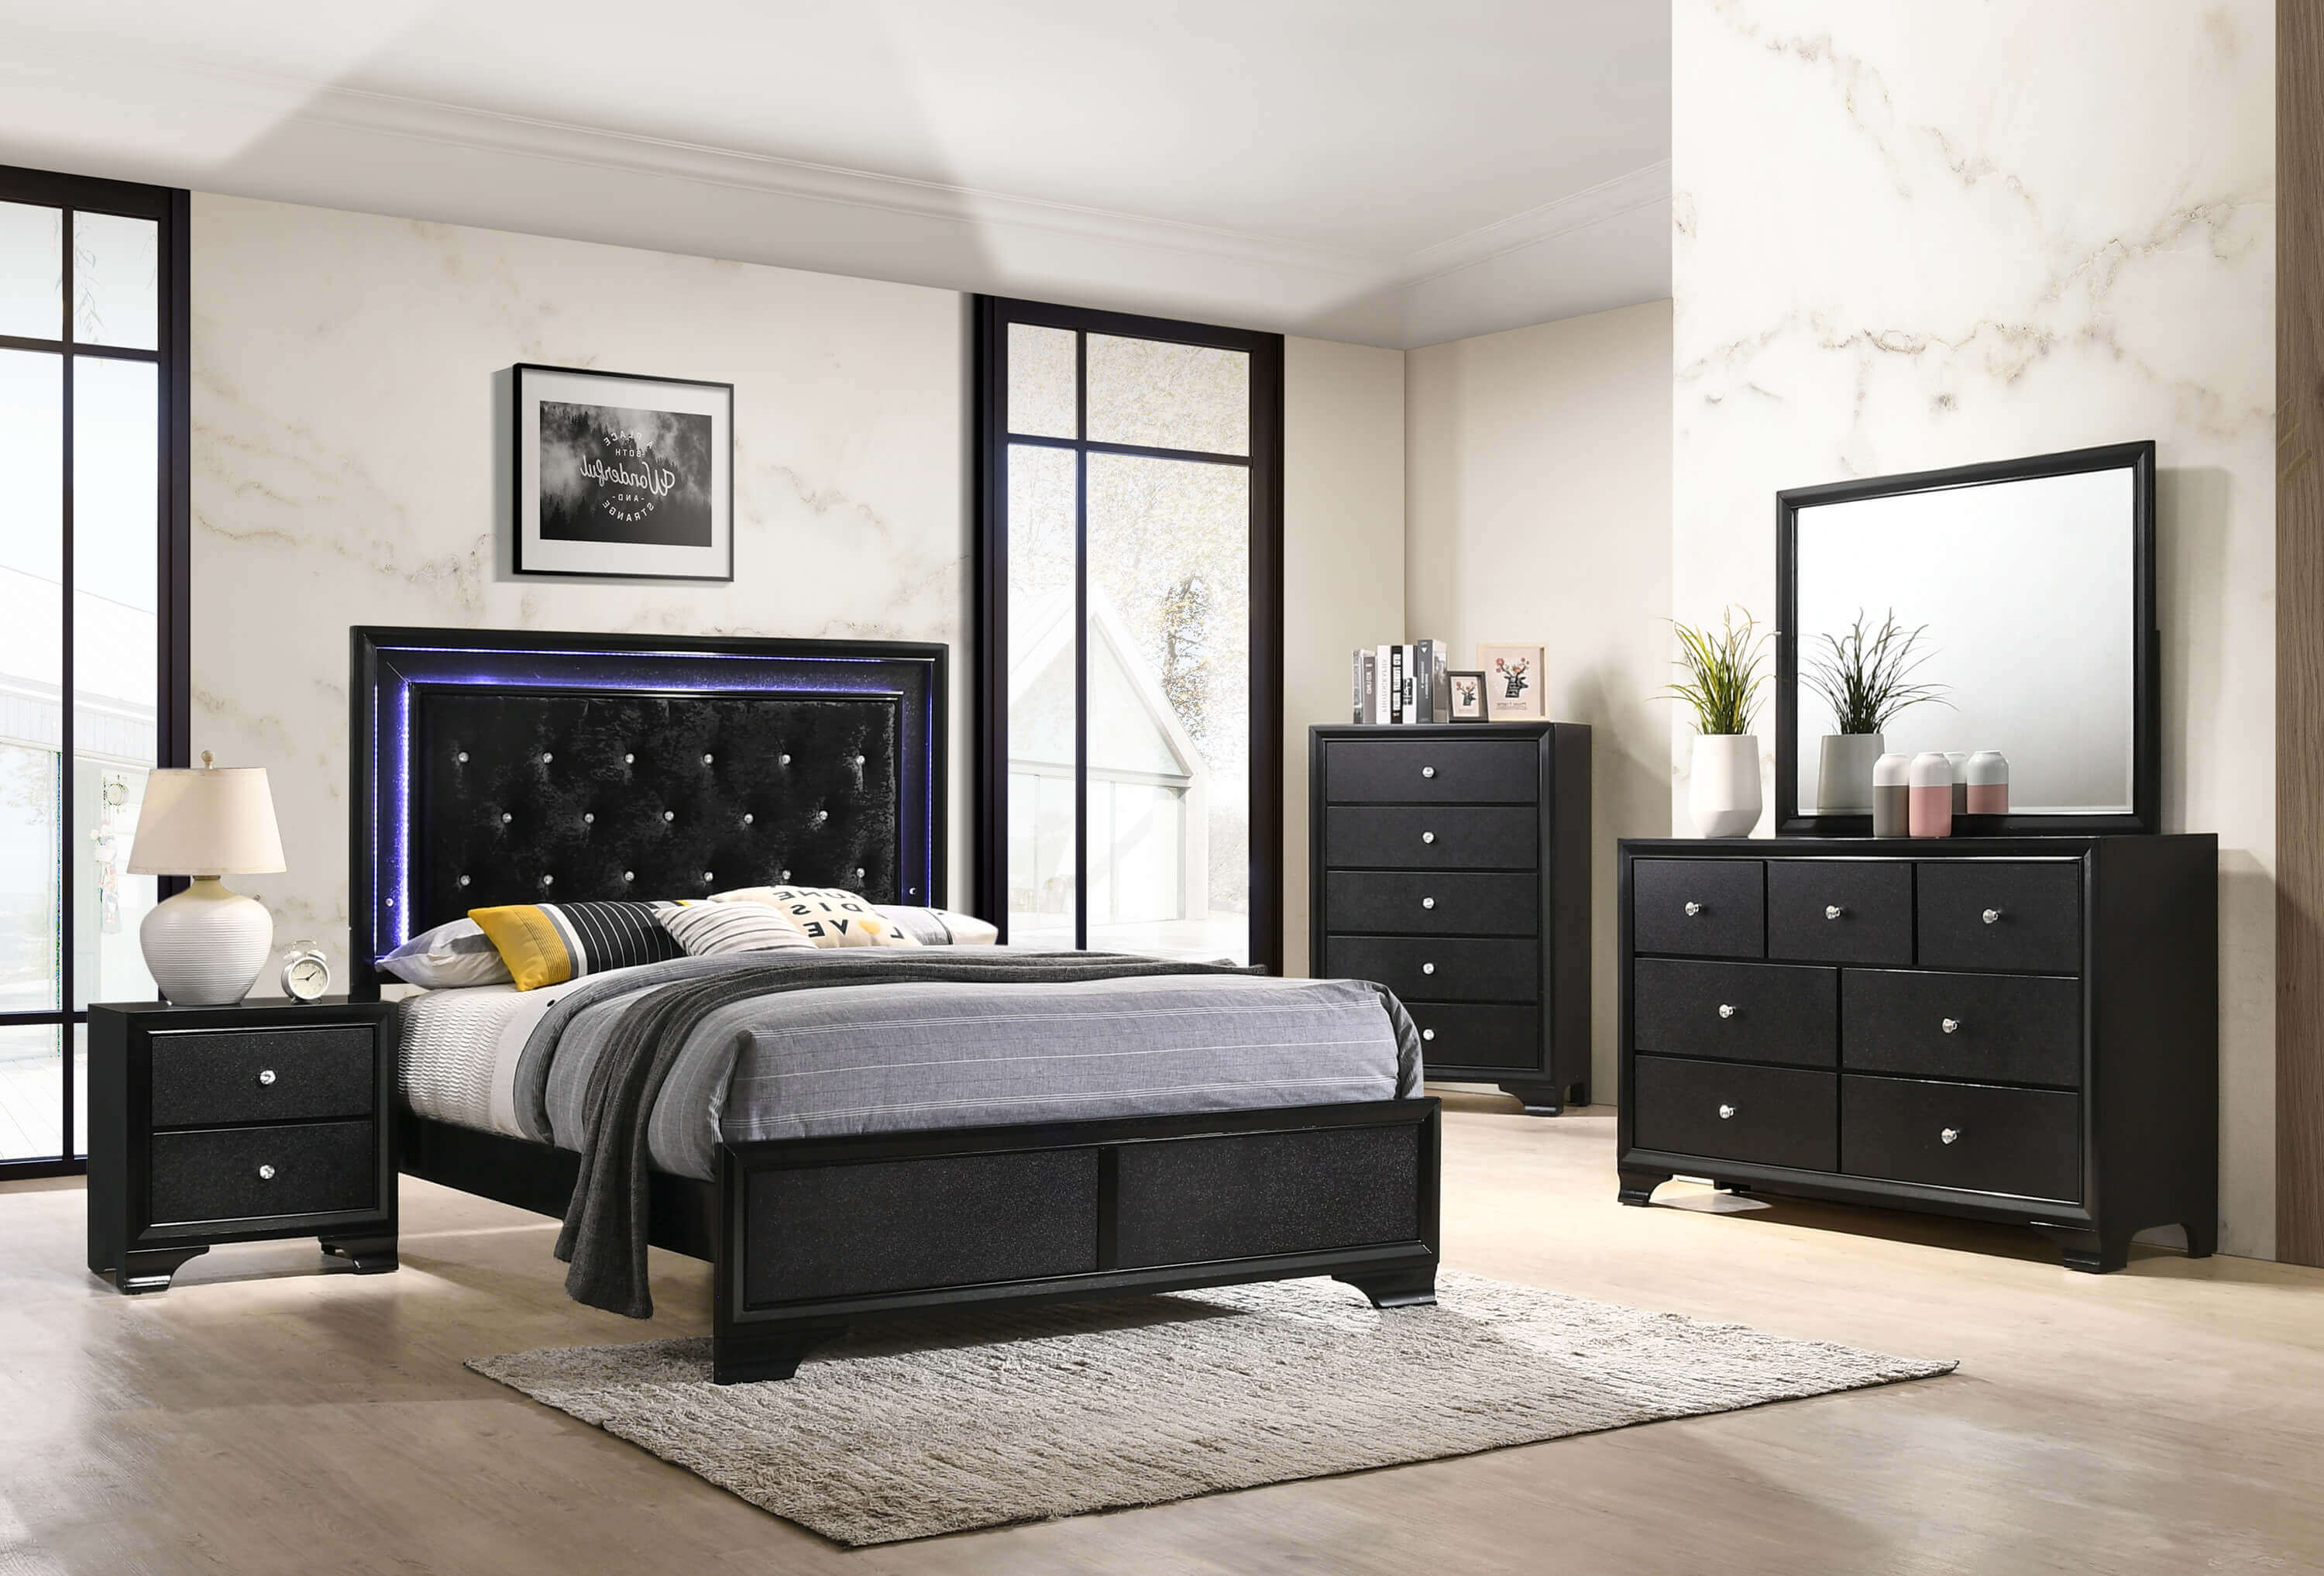 Micah Black Led Bedroom Furniture Sets, Twin Bedroom Sets Clearance